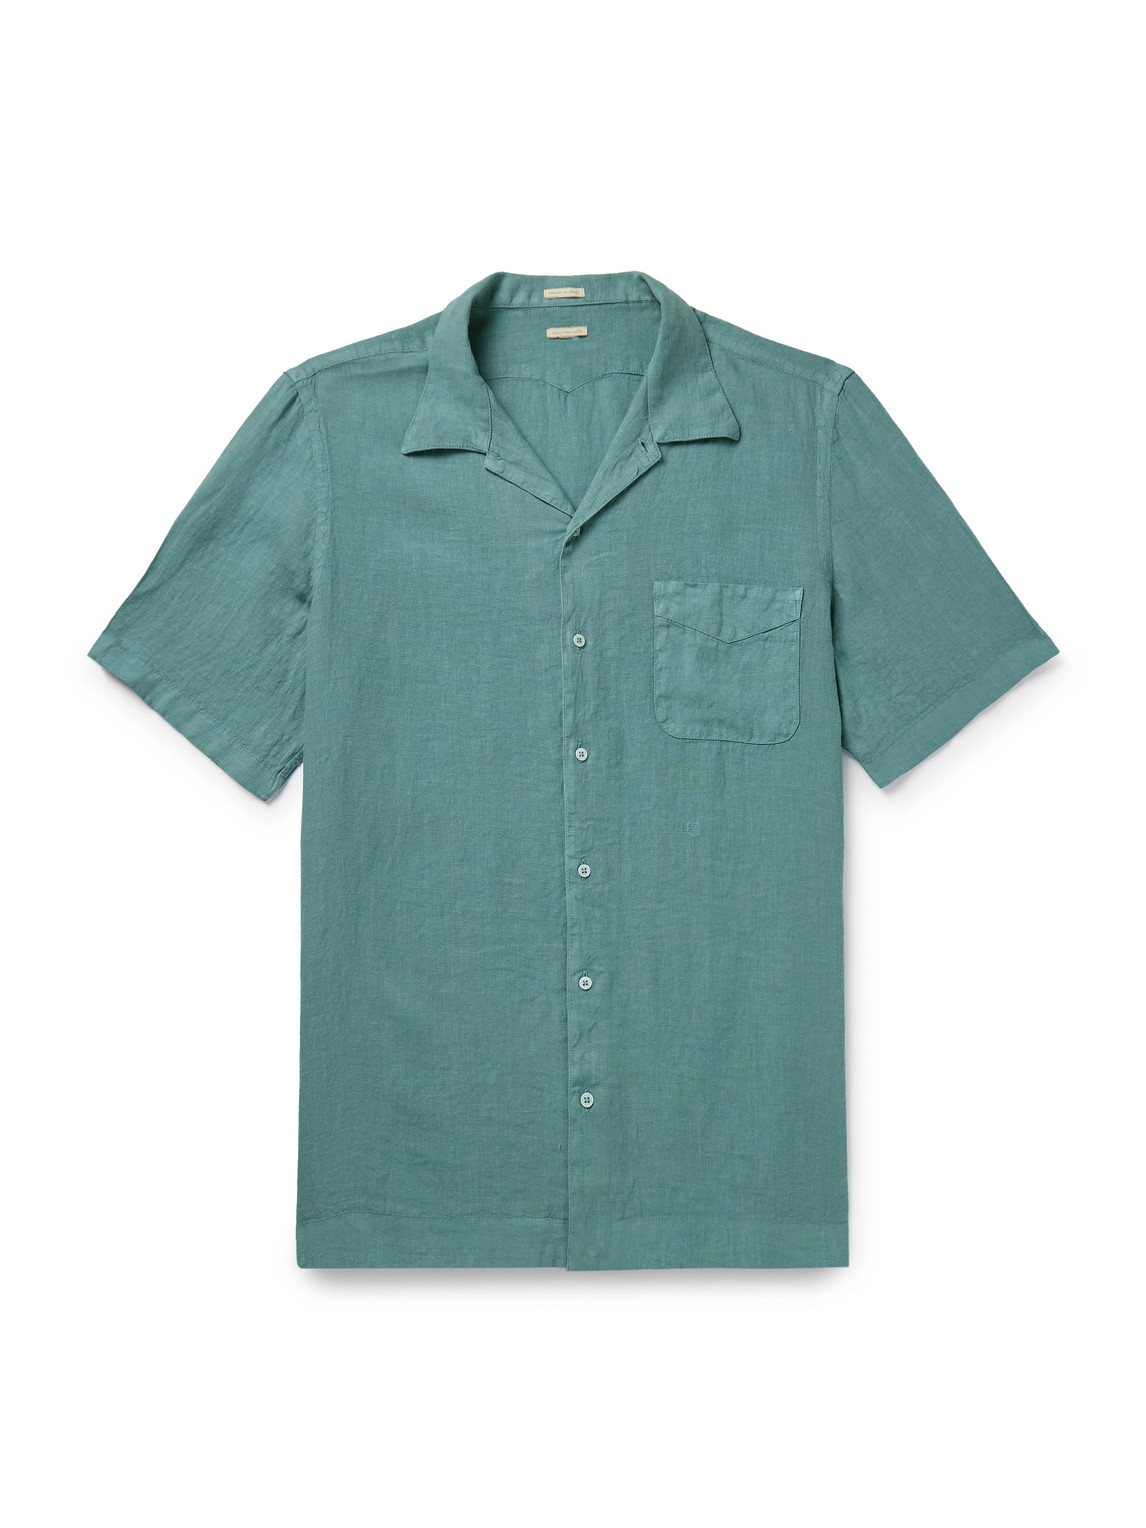 Venice Convertible-Collar Cotton Shirt